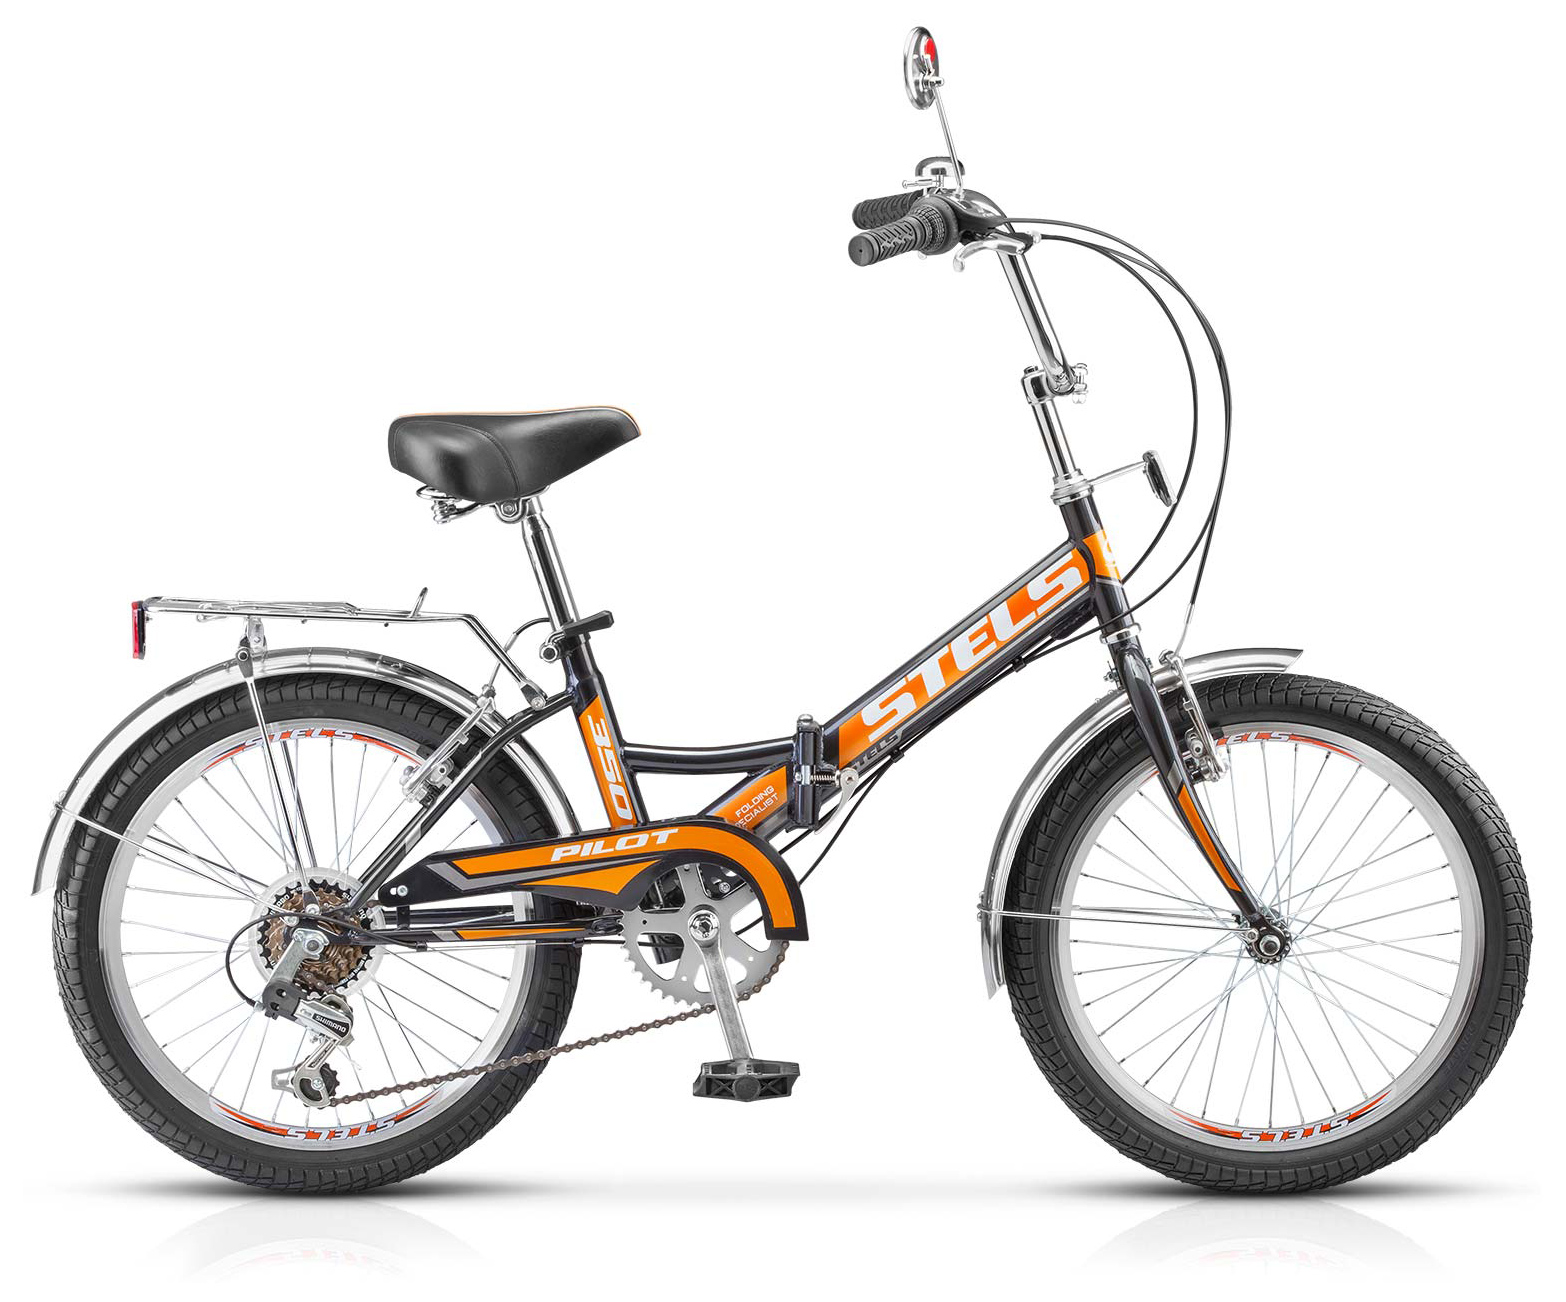  Отзывы о Складном велосипеде Stels Pilot 350 20" (Z011) 2019